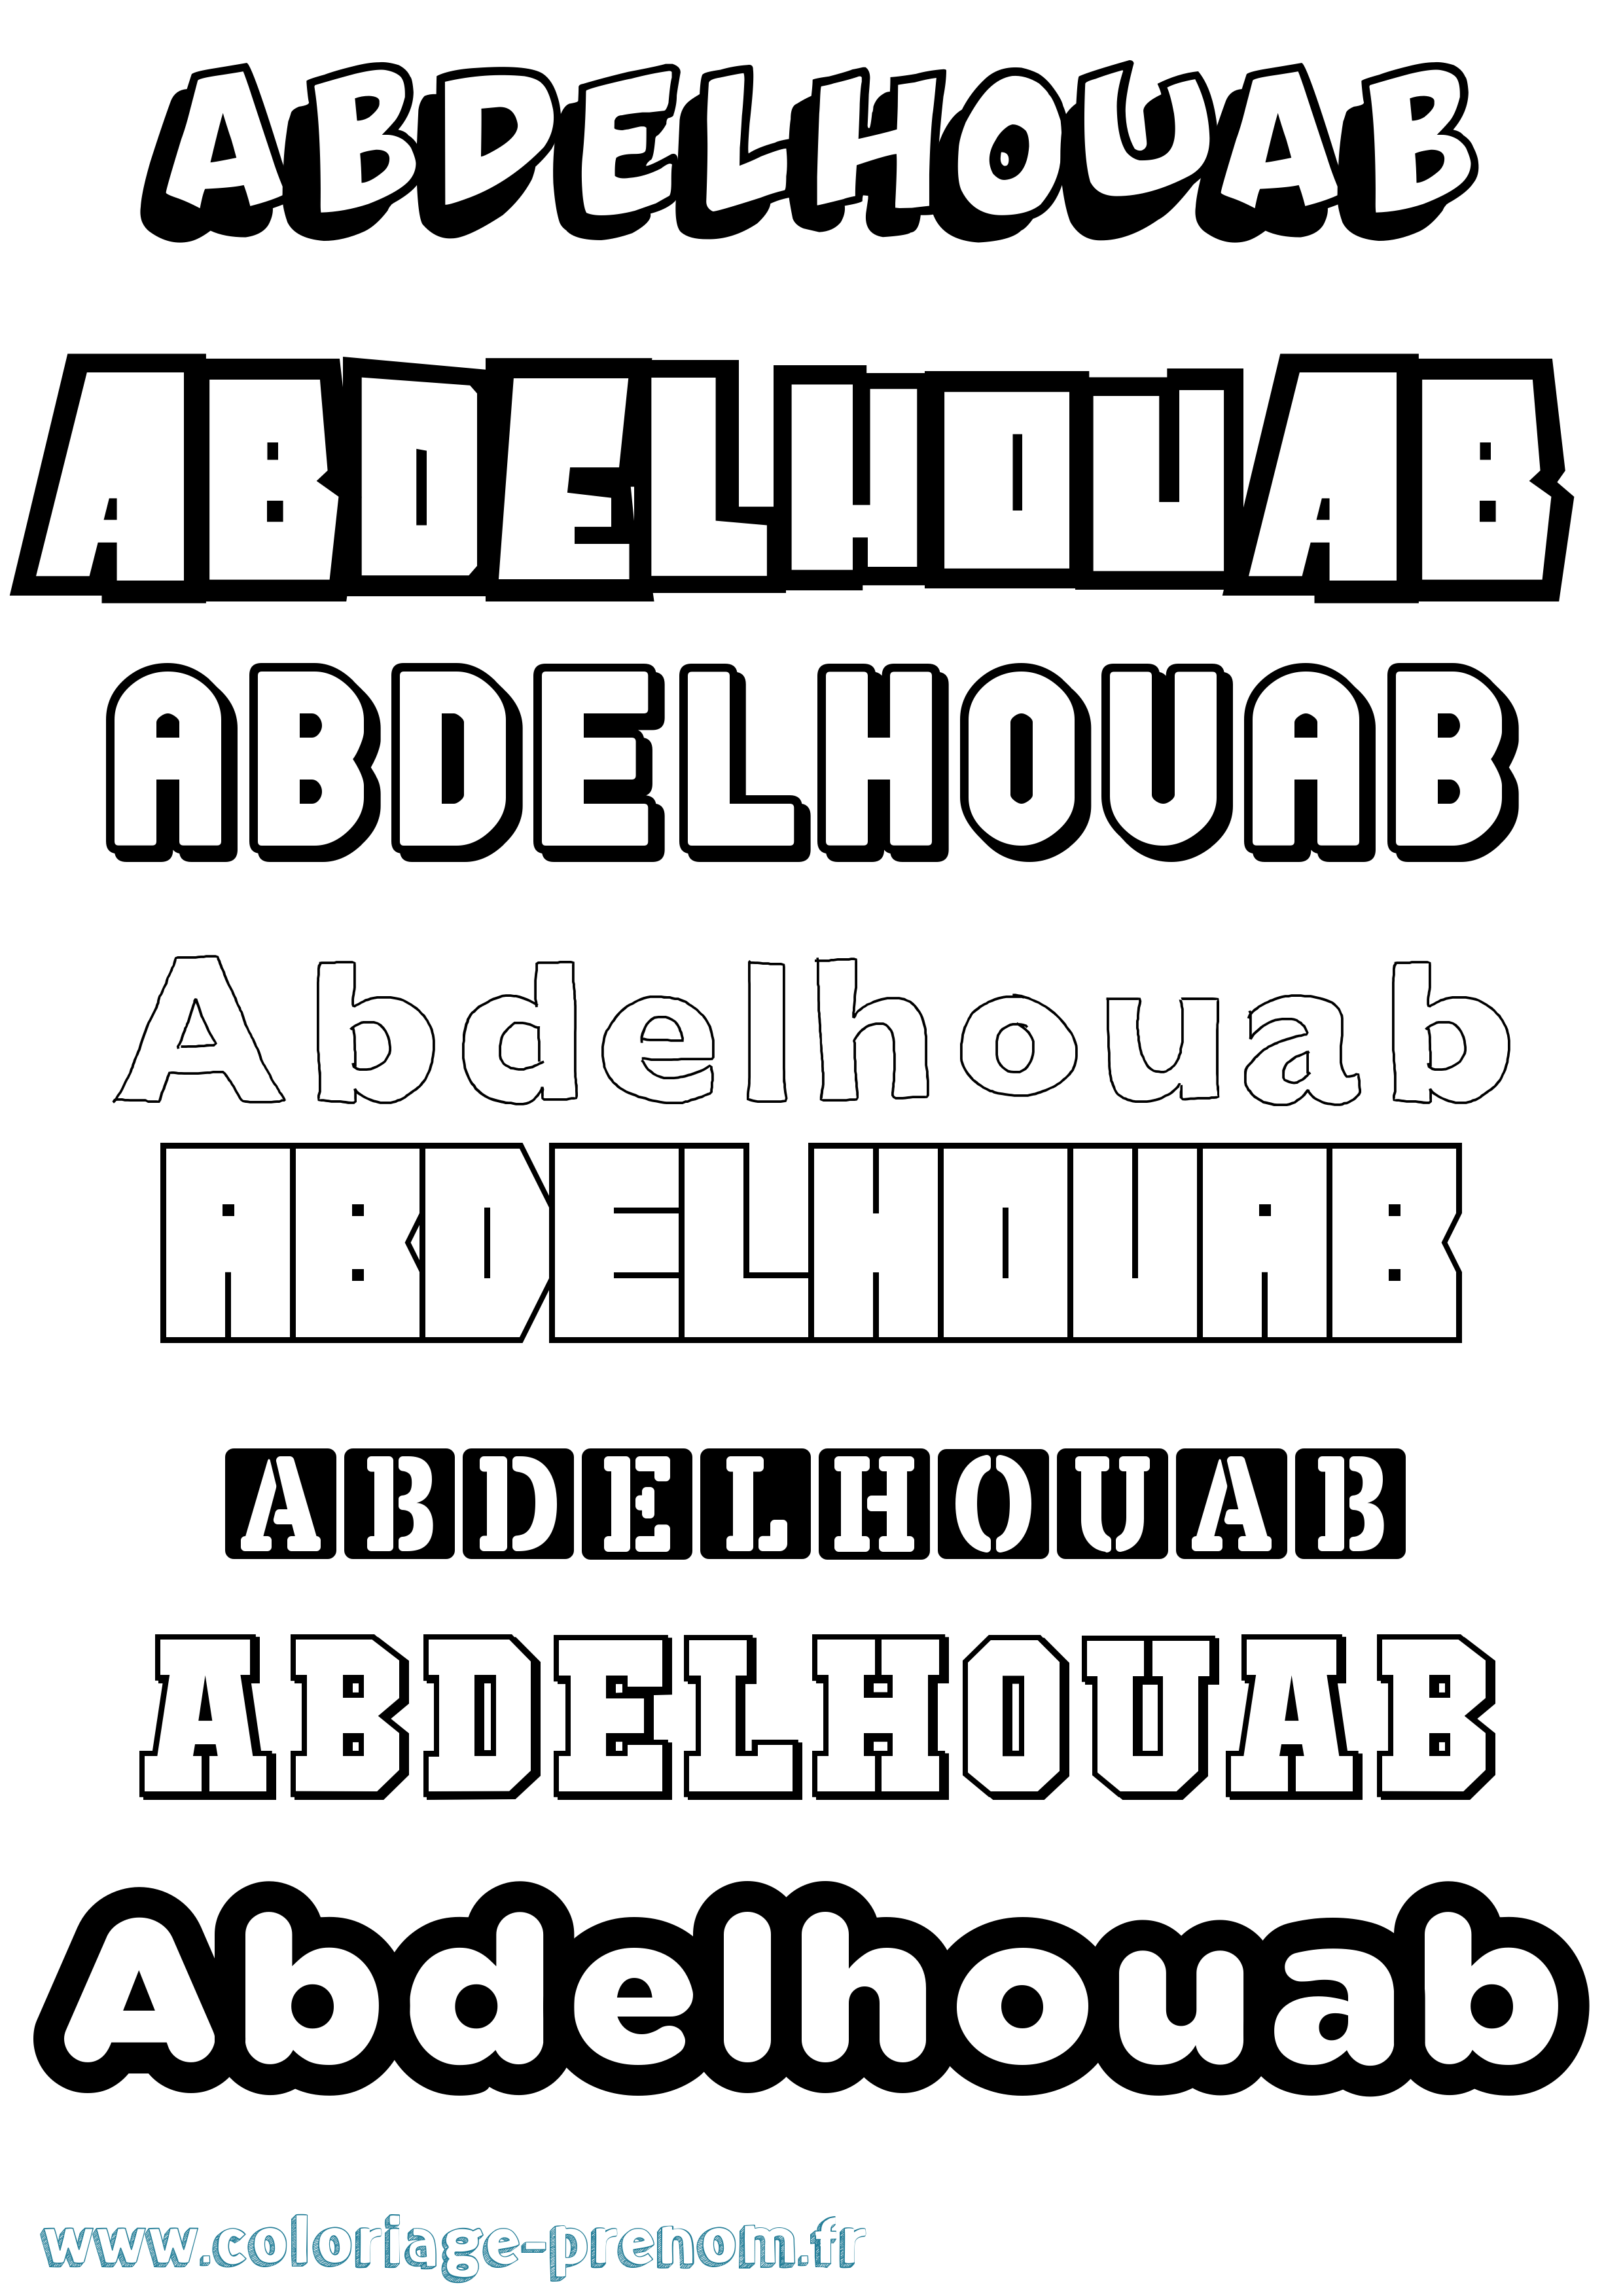 Coloriage prénom Abdelhouab Simple